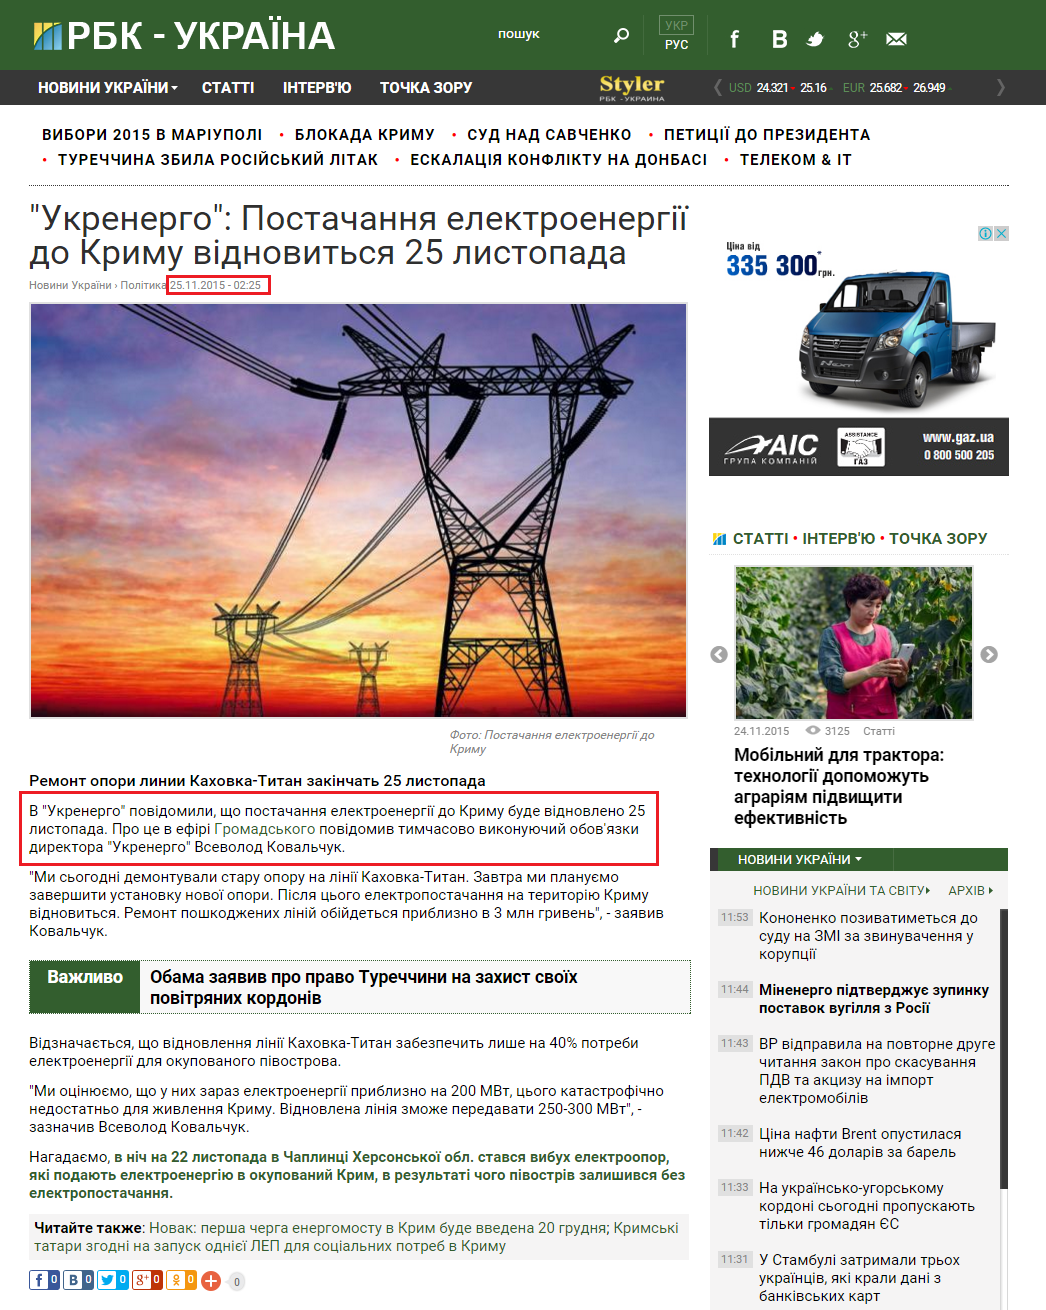 http://www.rbc.ua/ukr/news/ukrenergo-postavka-elektroenergii-krym-vozobnovitsya-1448408368.html